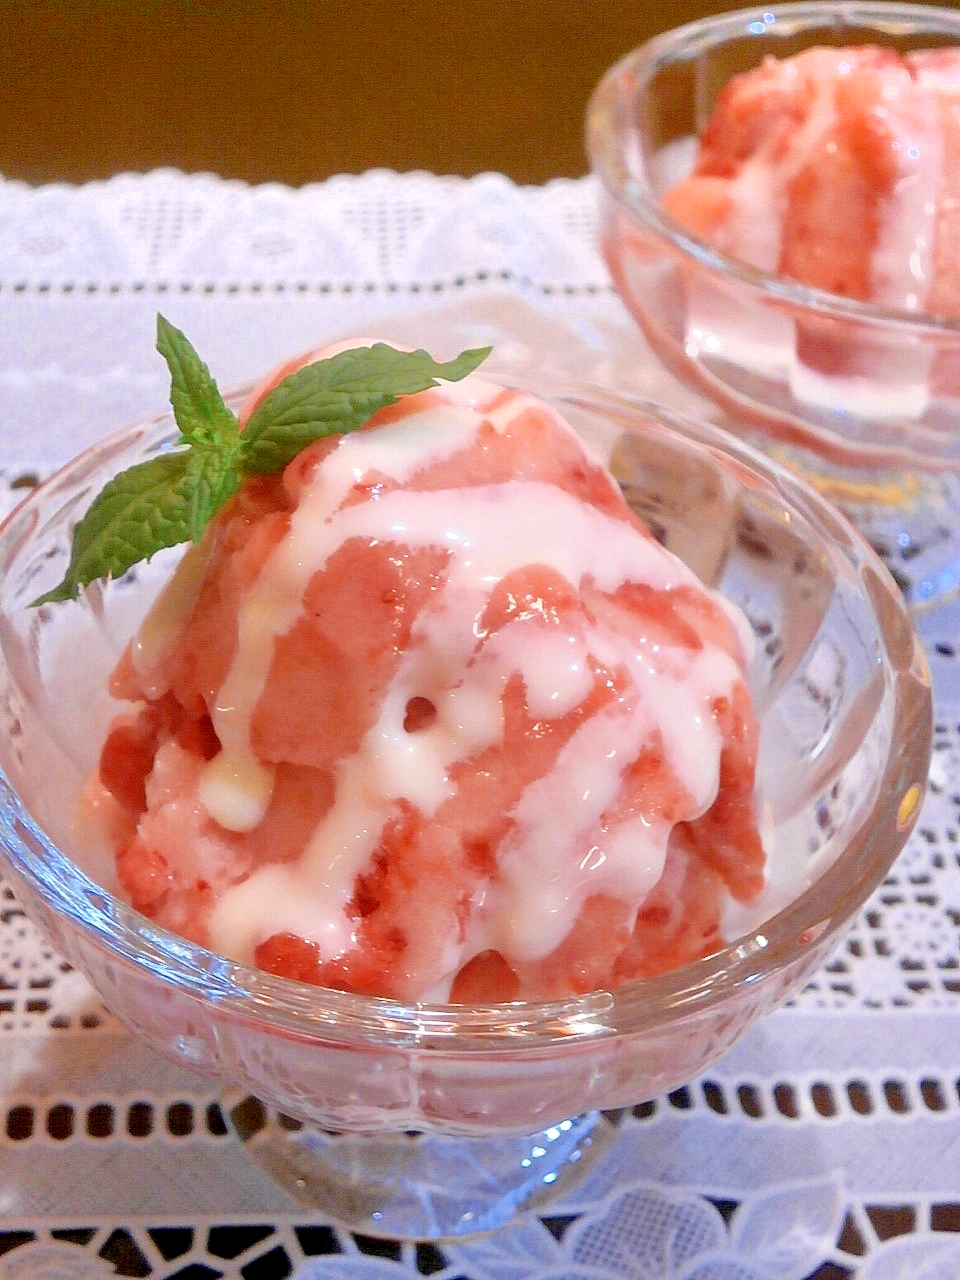 冷凍フルーツだけで作るアイス 新食感スイーツ ヨナナス のレシピ10選 Macaroni